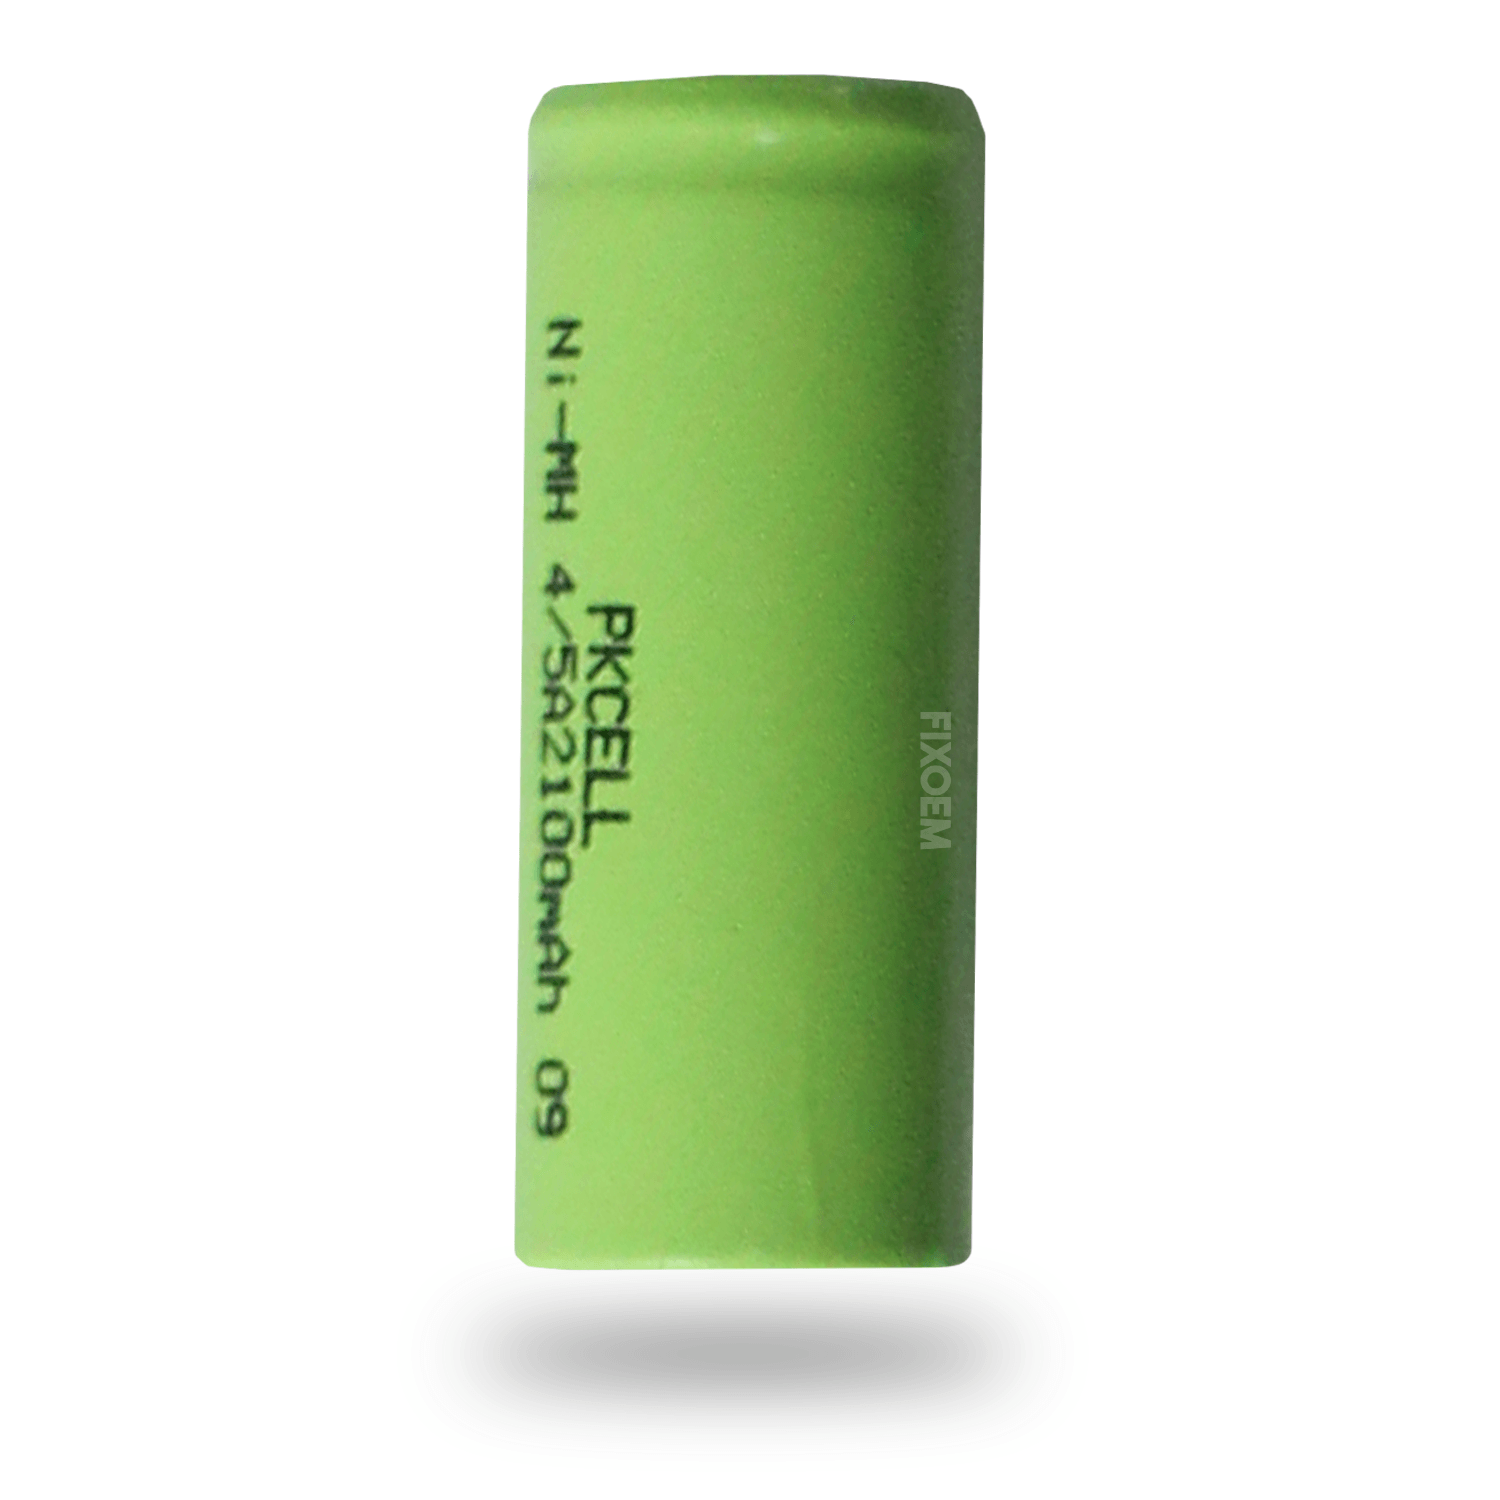 Bateria Ni-MH Recargable (Níquel-Hidruro Metálico) 4/5A 2100mAh |+2,000 reseñas 4.8/5 ⭐